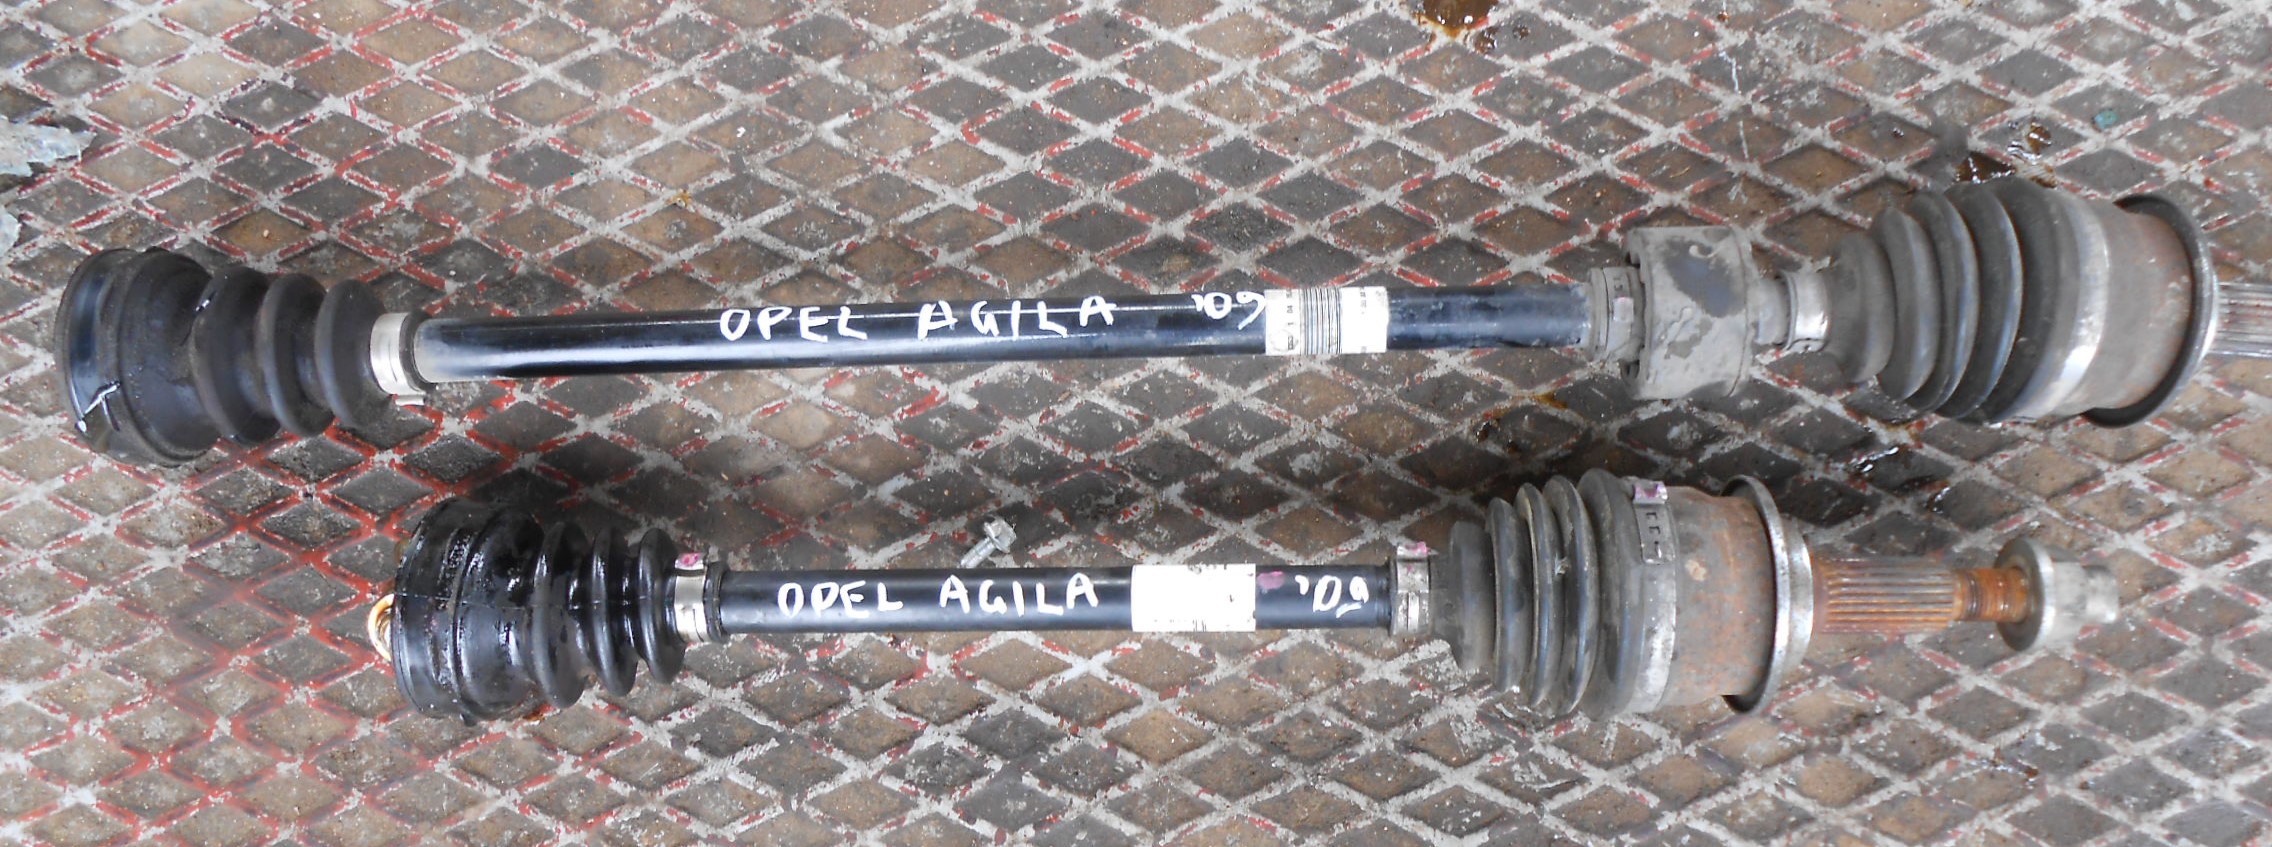 Ημιαξόνιο Αριστερό Opel Agila ’09 Προσφορά.